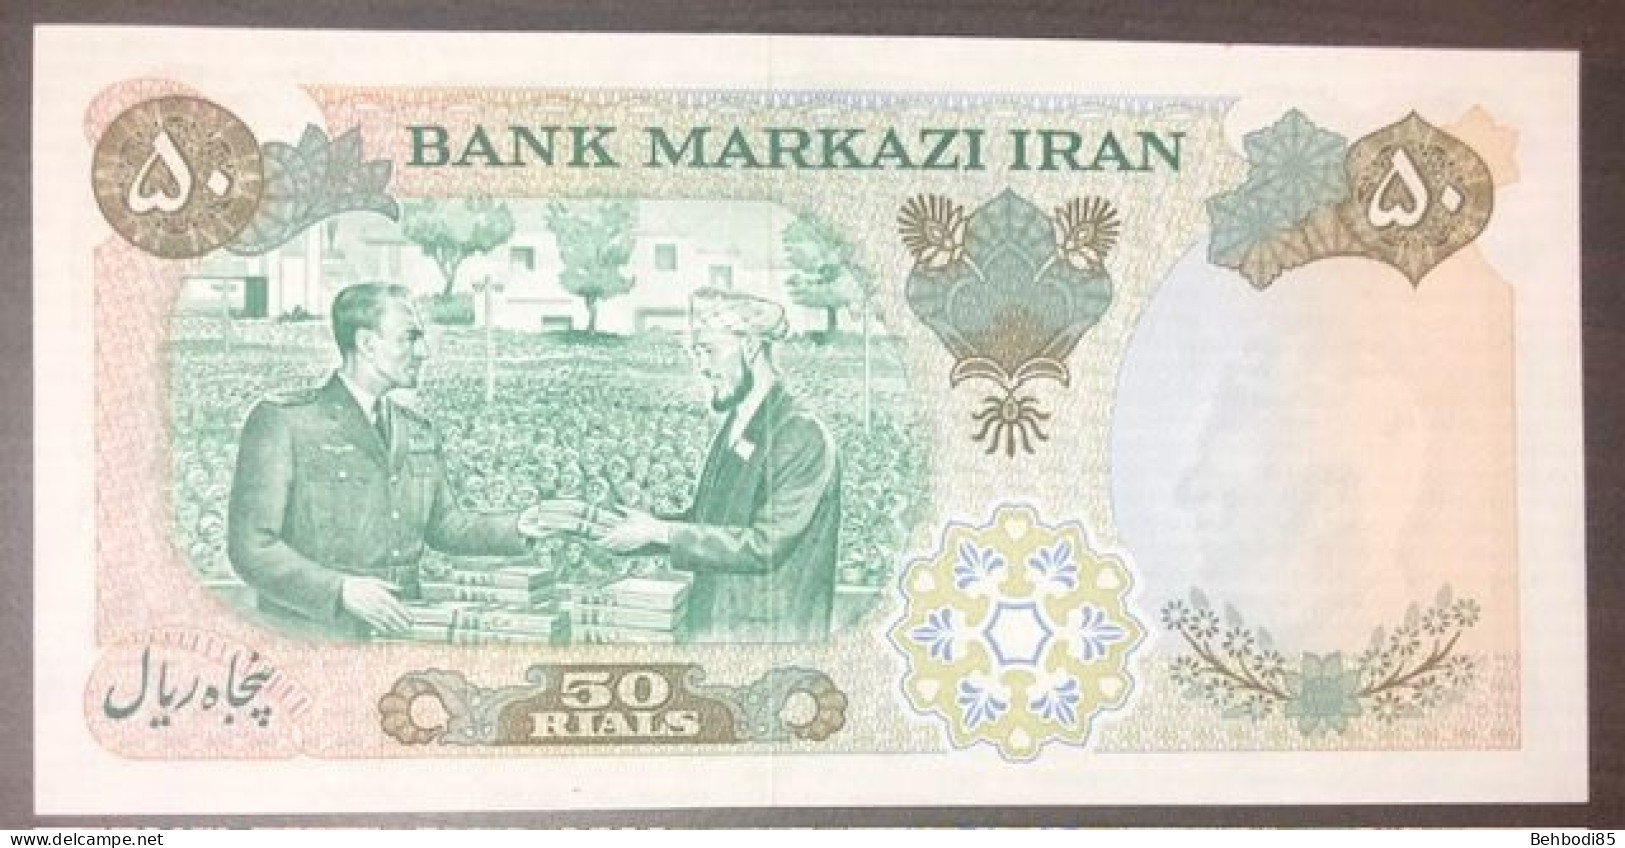 IRAN , 50 Rials 500th Anniversary Commemorative Note 1971 UNC. - Iran